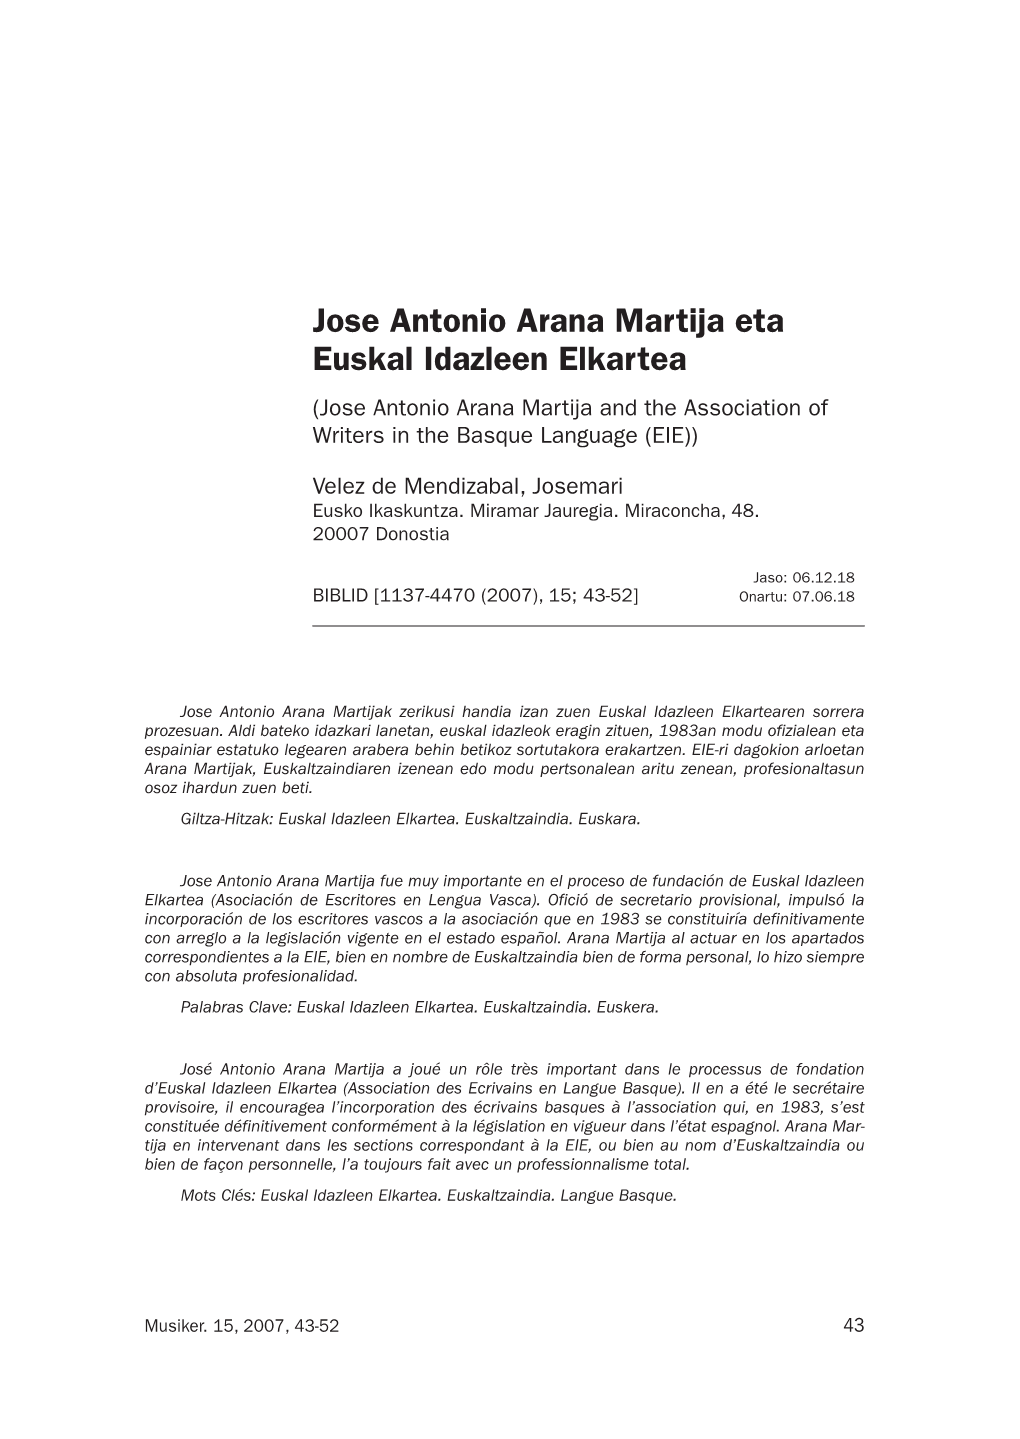 Jose Antonio Arana Martija Eta Euskal Idazleen Elkartea (Jose Antonio Arana Martija and the Association of Writers in the Basque Language (EIE))